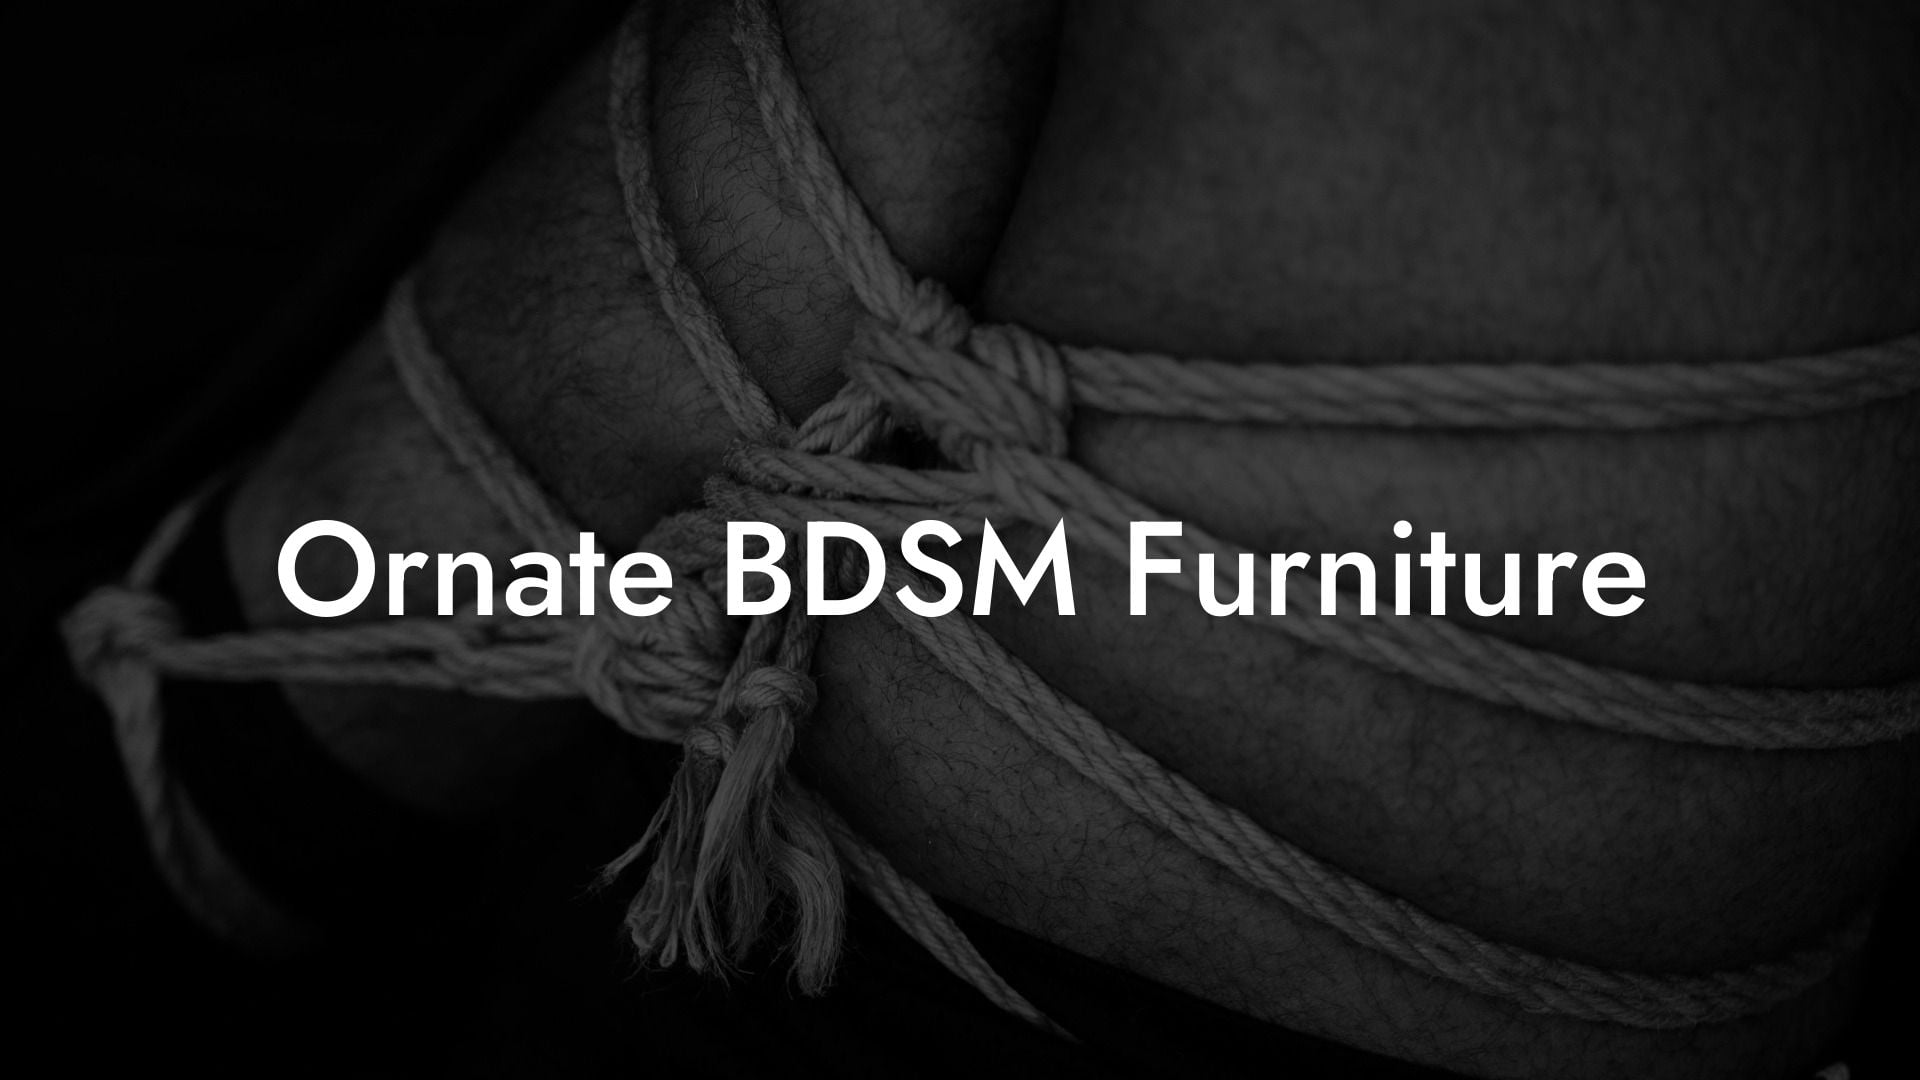 Ornate BDSM Furniture